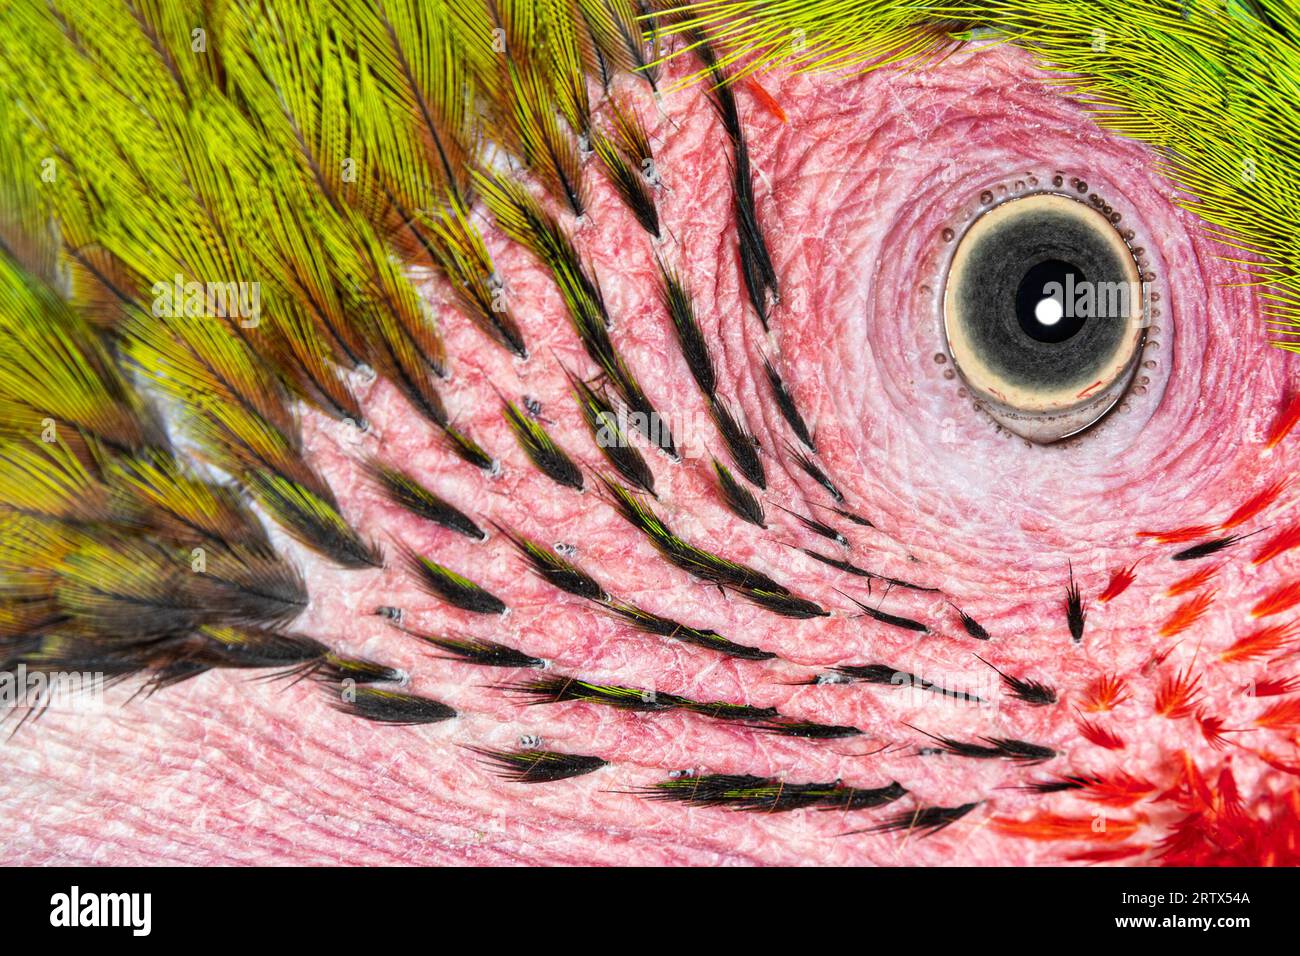 Foto de cabeza macro de un gran pájaro guacamayo verde, detalles en los ojos y pequeñas plumas, Ara ambiguus, aislado en blanco Foto de stock